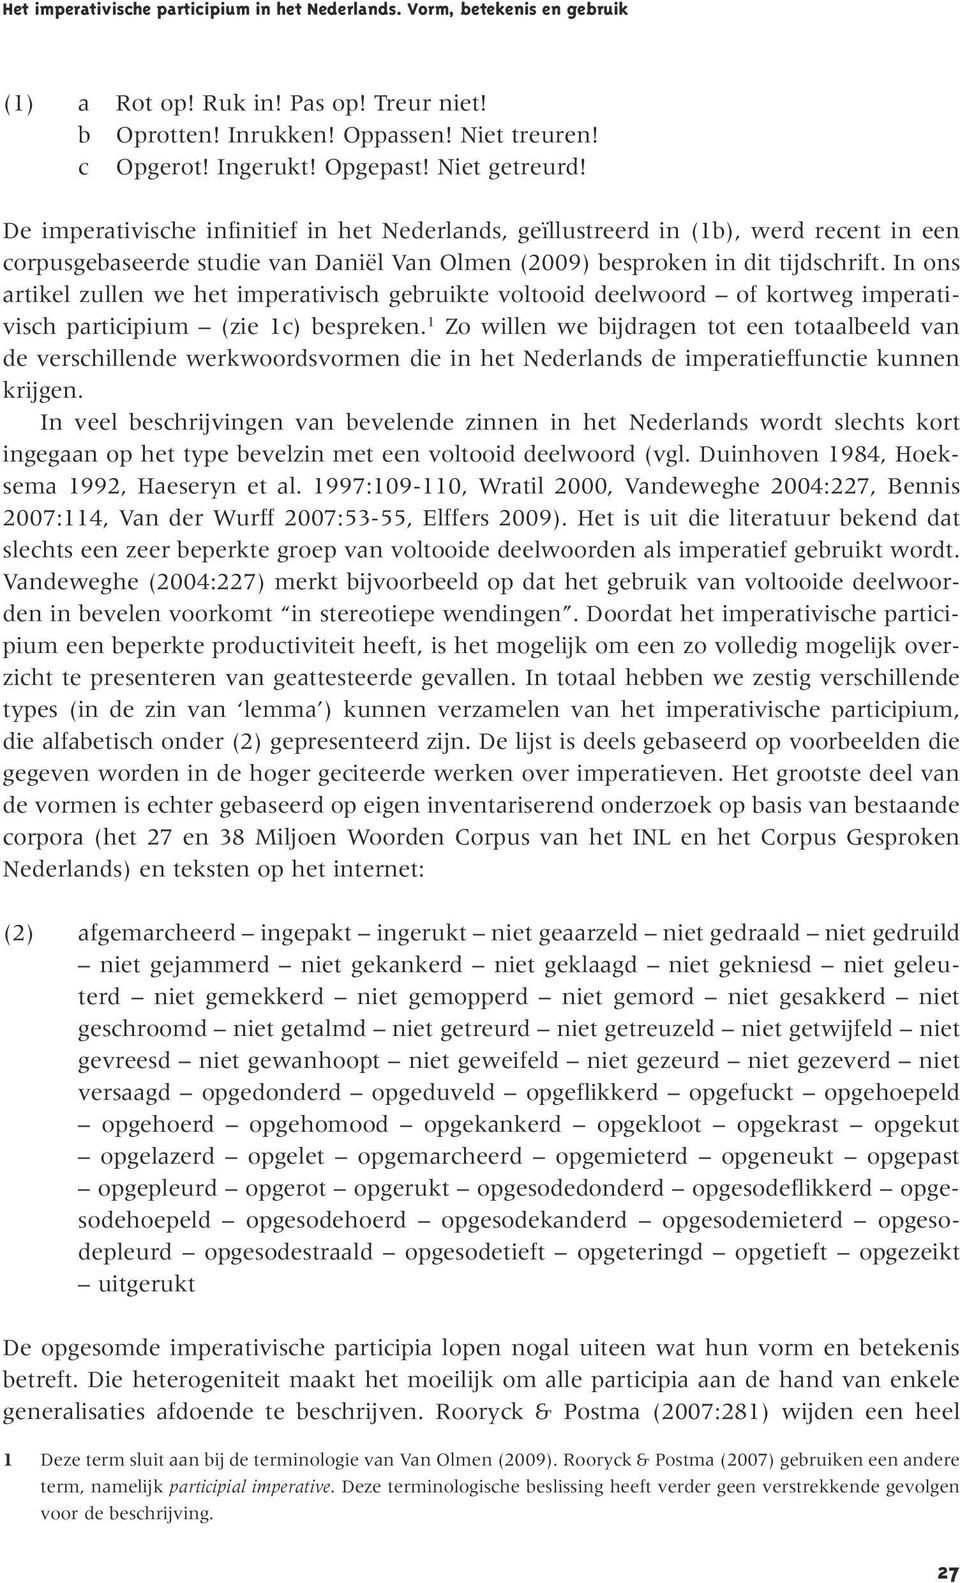 Het imperativische participium in het Nederlands. Vorm, betekenis en  gebruik - PDF Free Download